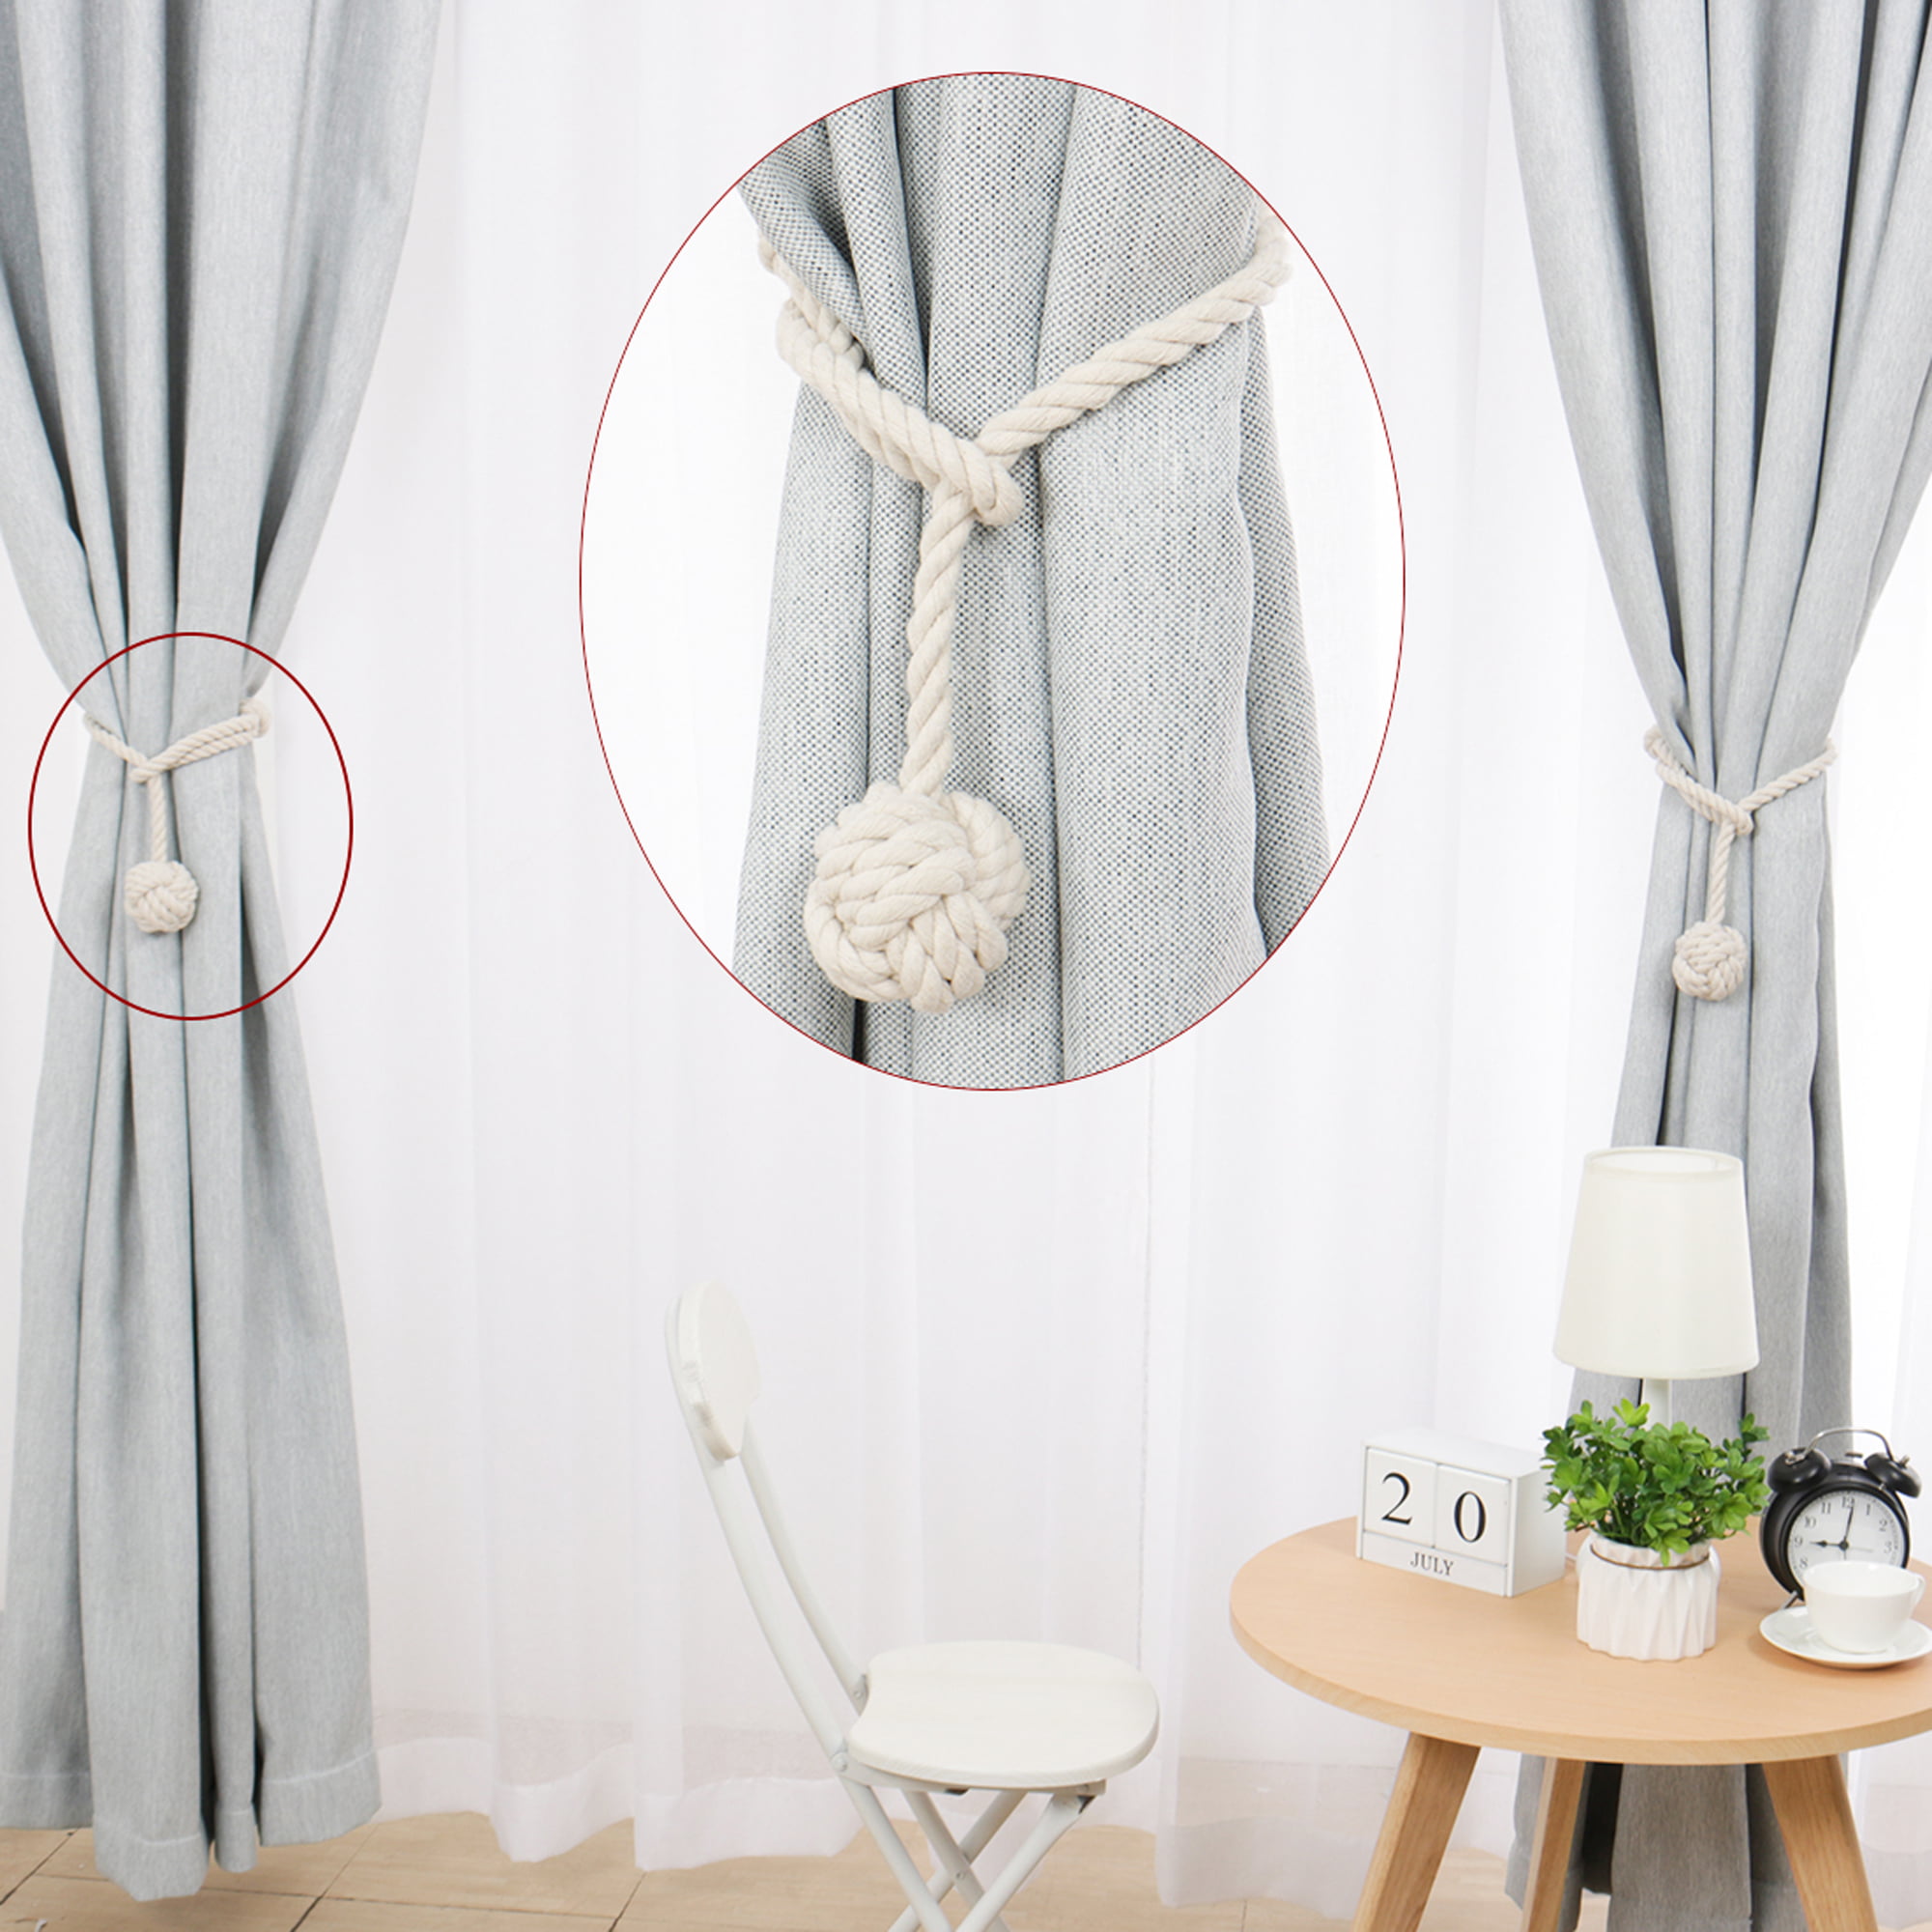 Curtain Hold backs Rope Tie Backs Tassel Tiebacks Living Room Bedroom Decorate 